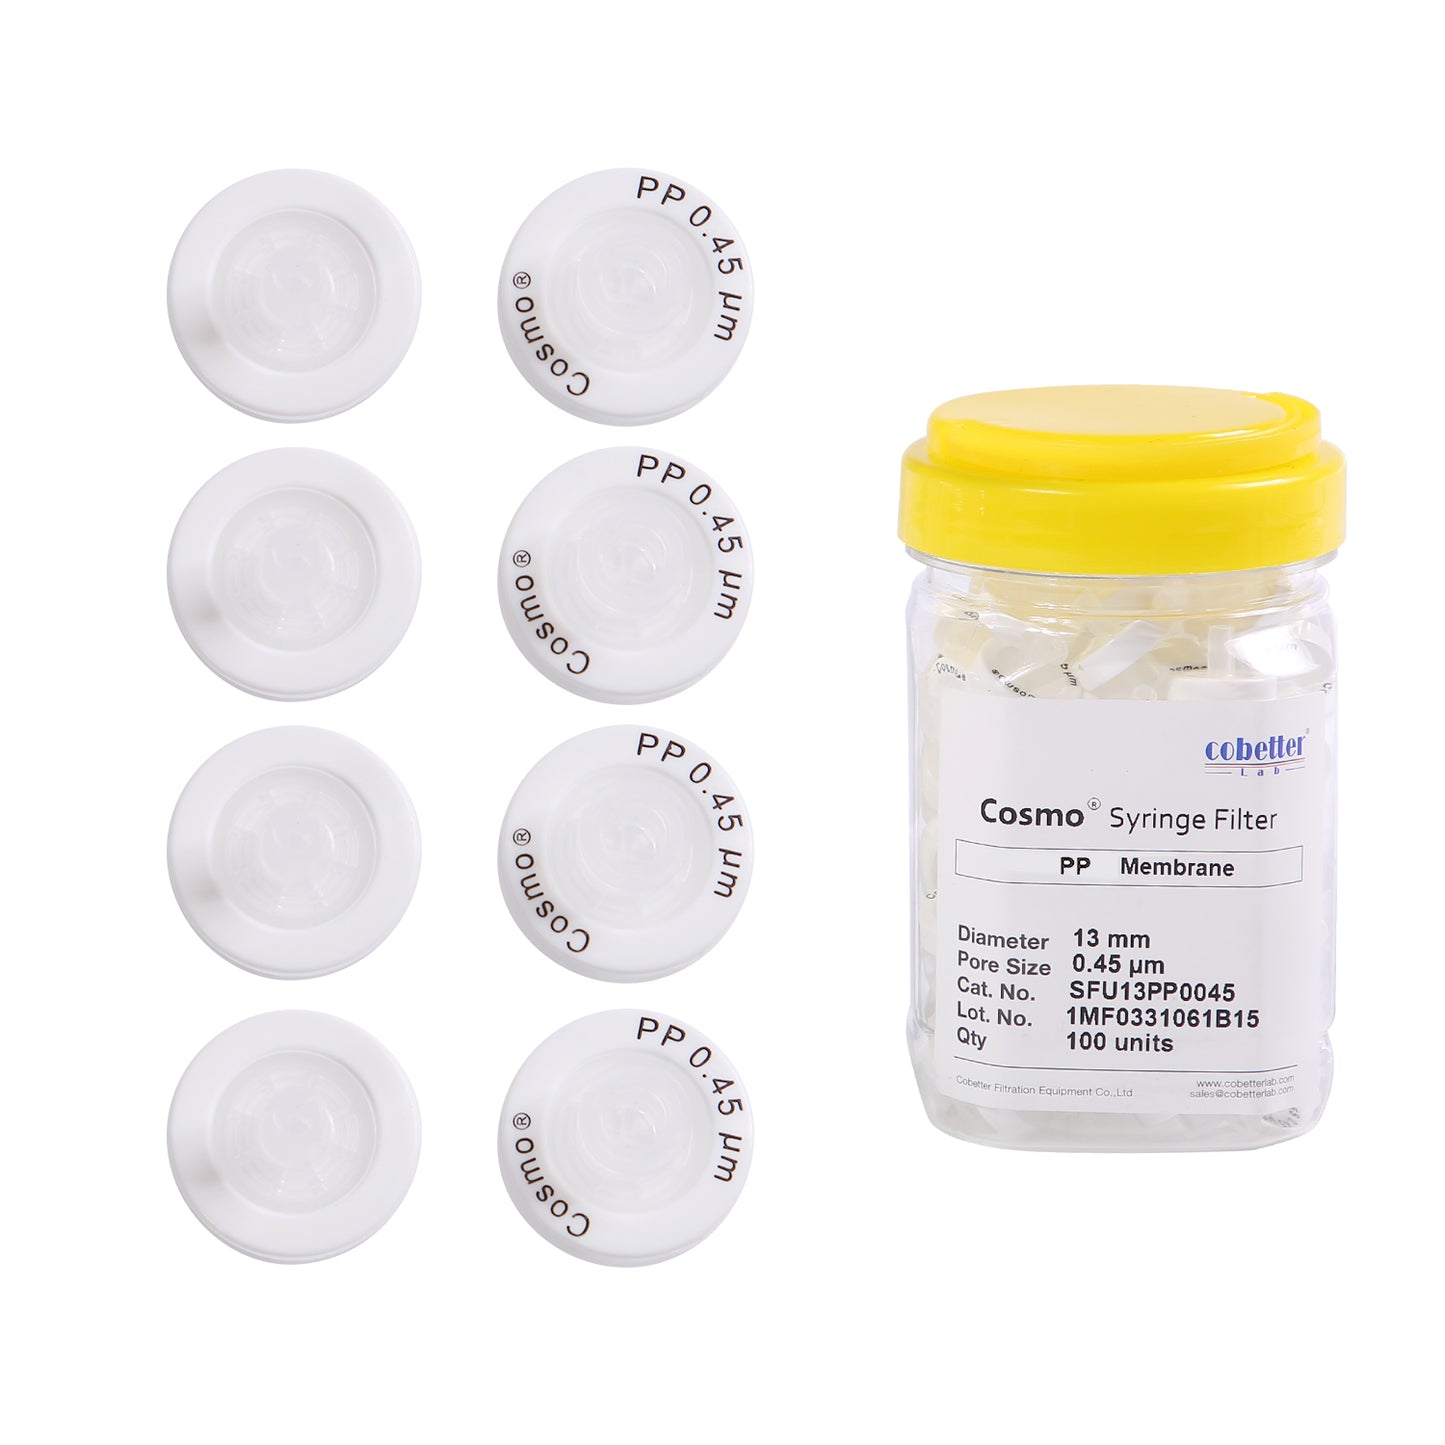 COBETTER Hydrophobic PP Syringe Filters Non-sterile 100pcs/pk